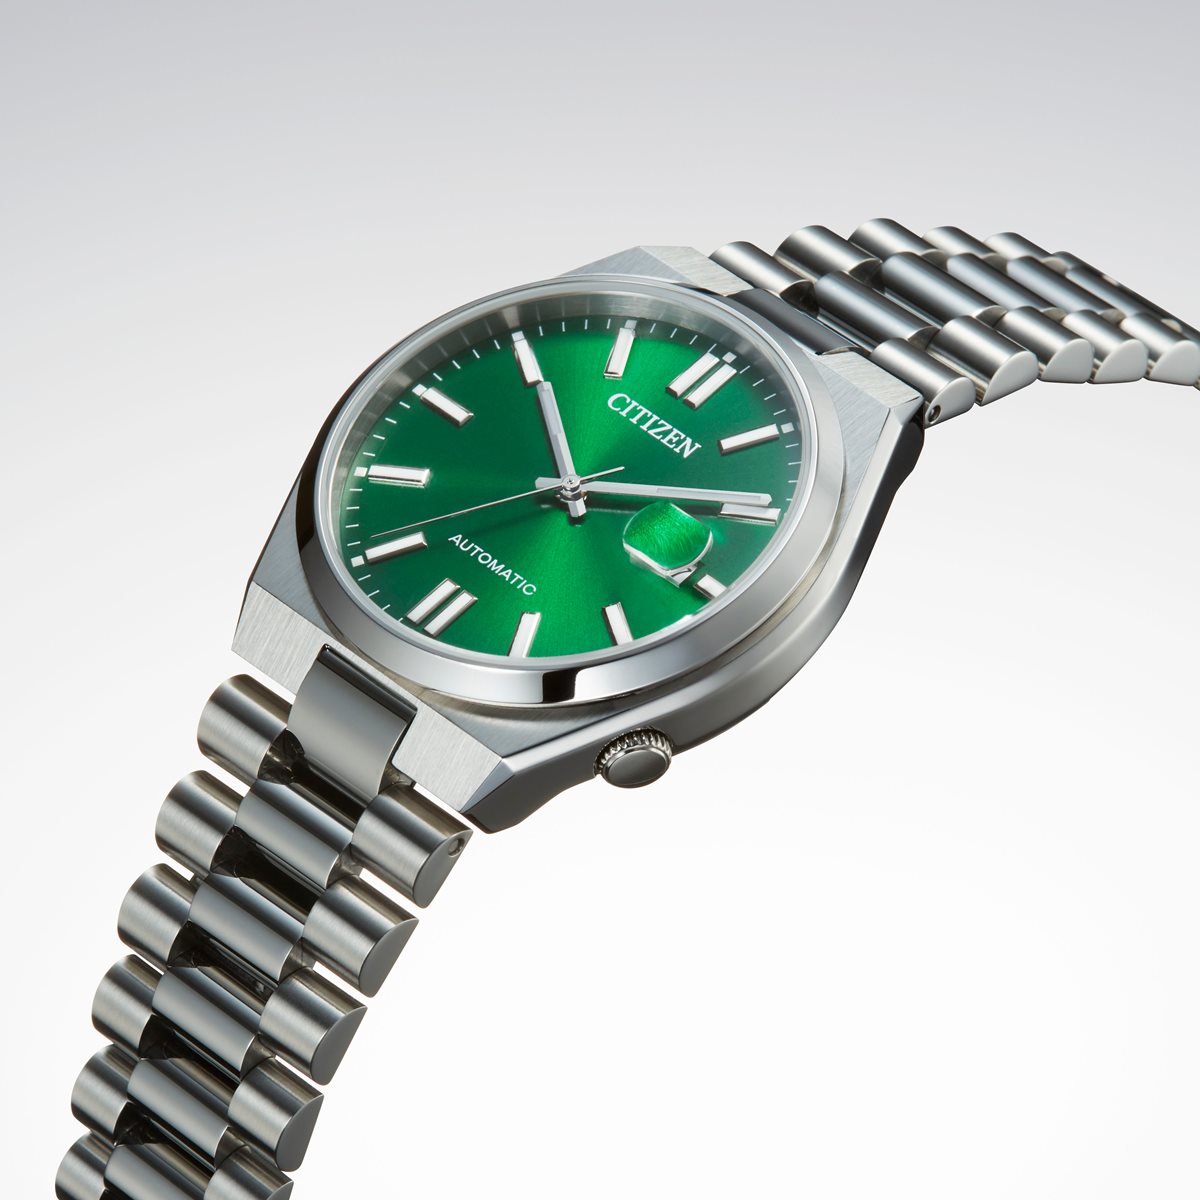 シチズンコレクション CITIZEN COLLECTION メカニカル 自動巻き 機械式 腕時計 メンズ NJ0150-81X TSUYOSA Collection